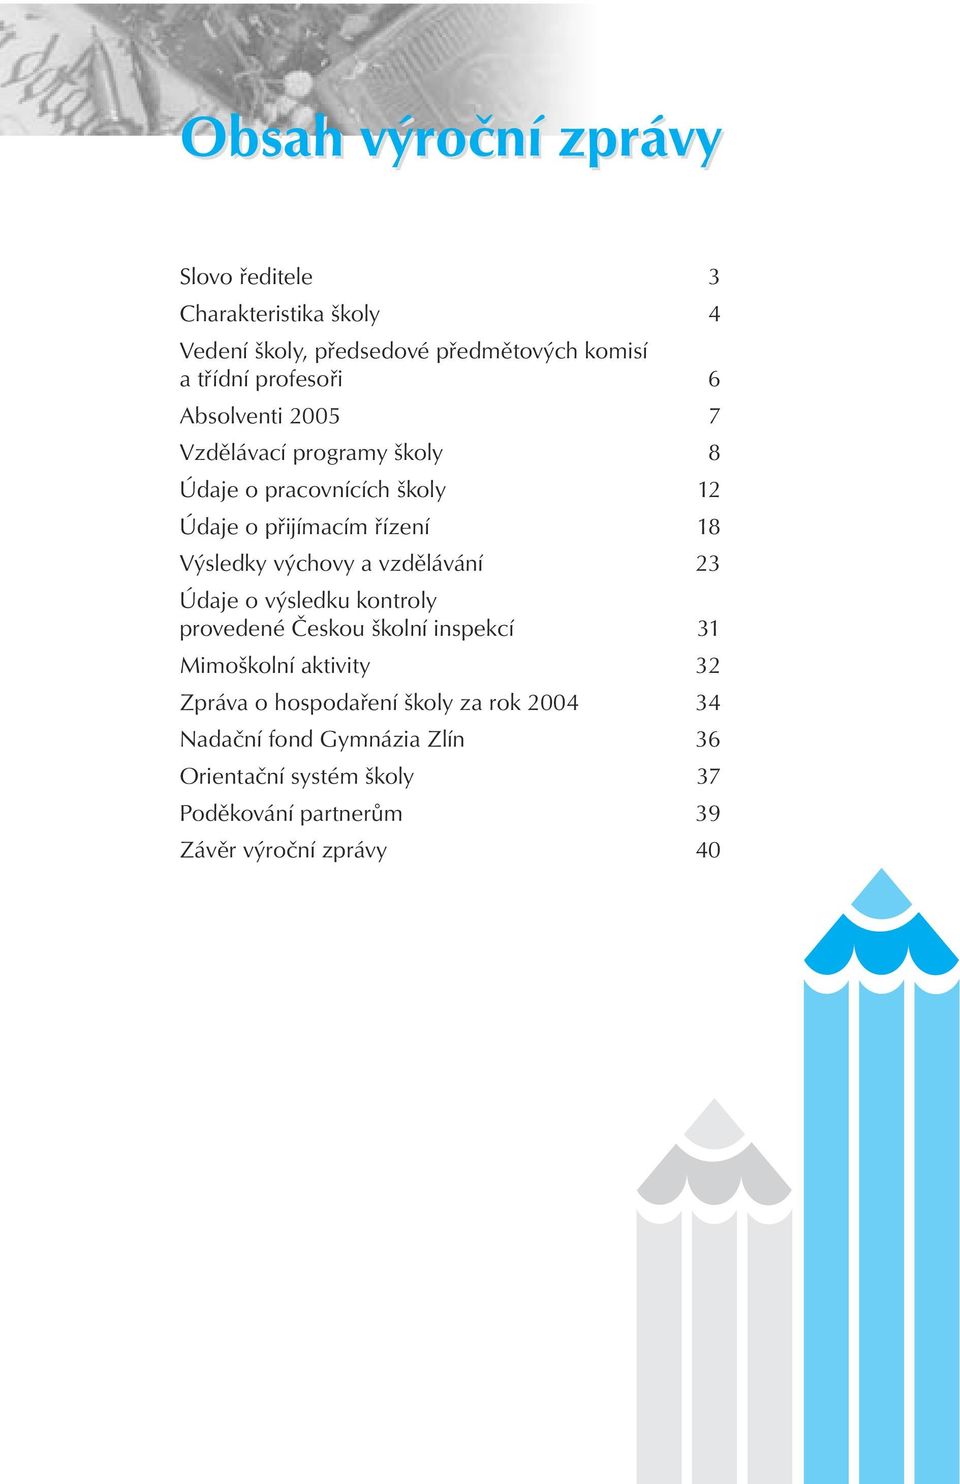 Výsledky výchovy a vzdělávání 23 Údaje o výsledku kontroly provedené Českou školní inspekcí 31 Mimoškolní aktivity 32 Zpráva